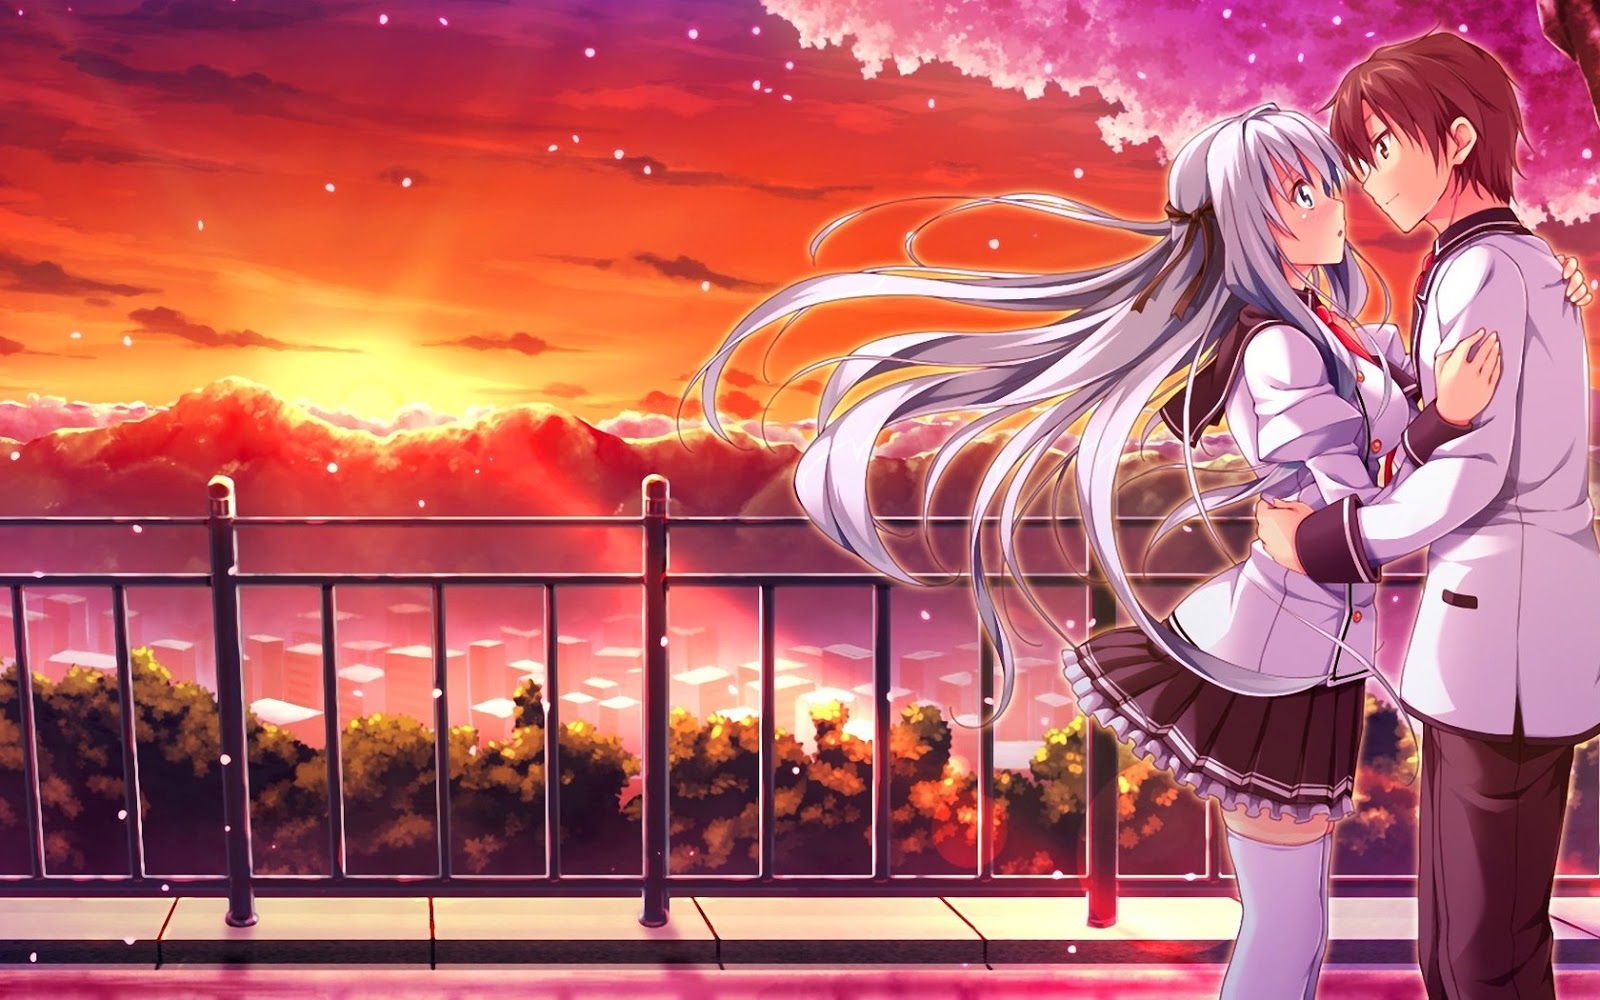 Wallpaper Romantis Hd - Anime Romantis Wallpaper Hd , HD Wallpaper & Backgrounds